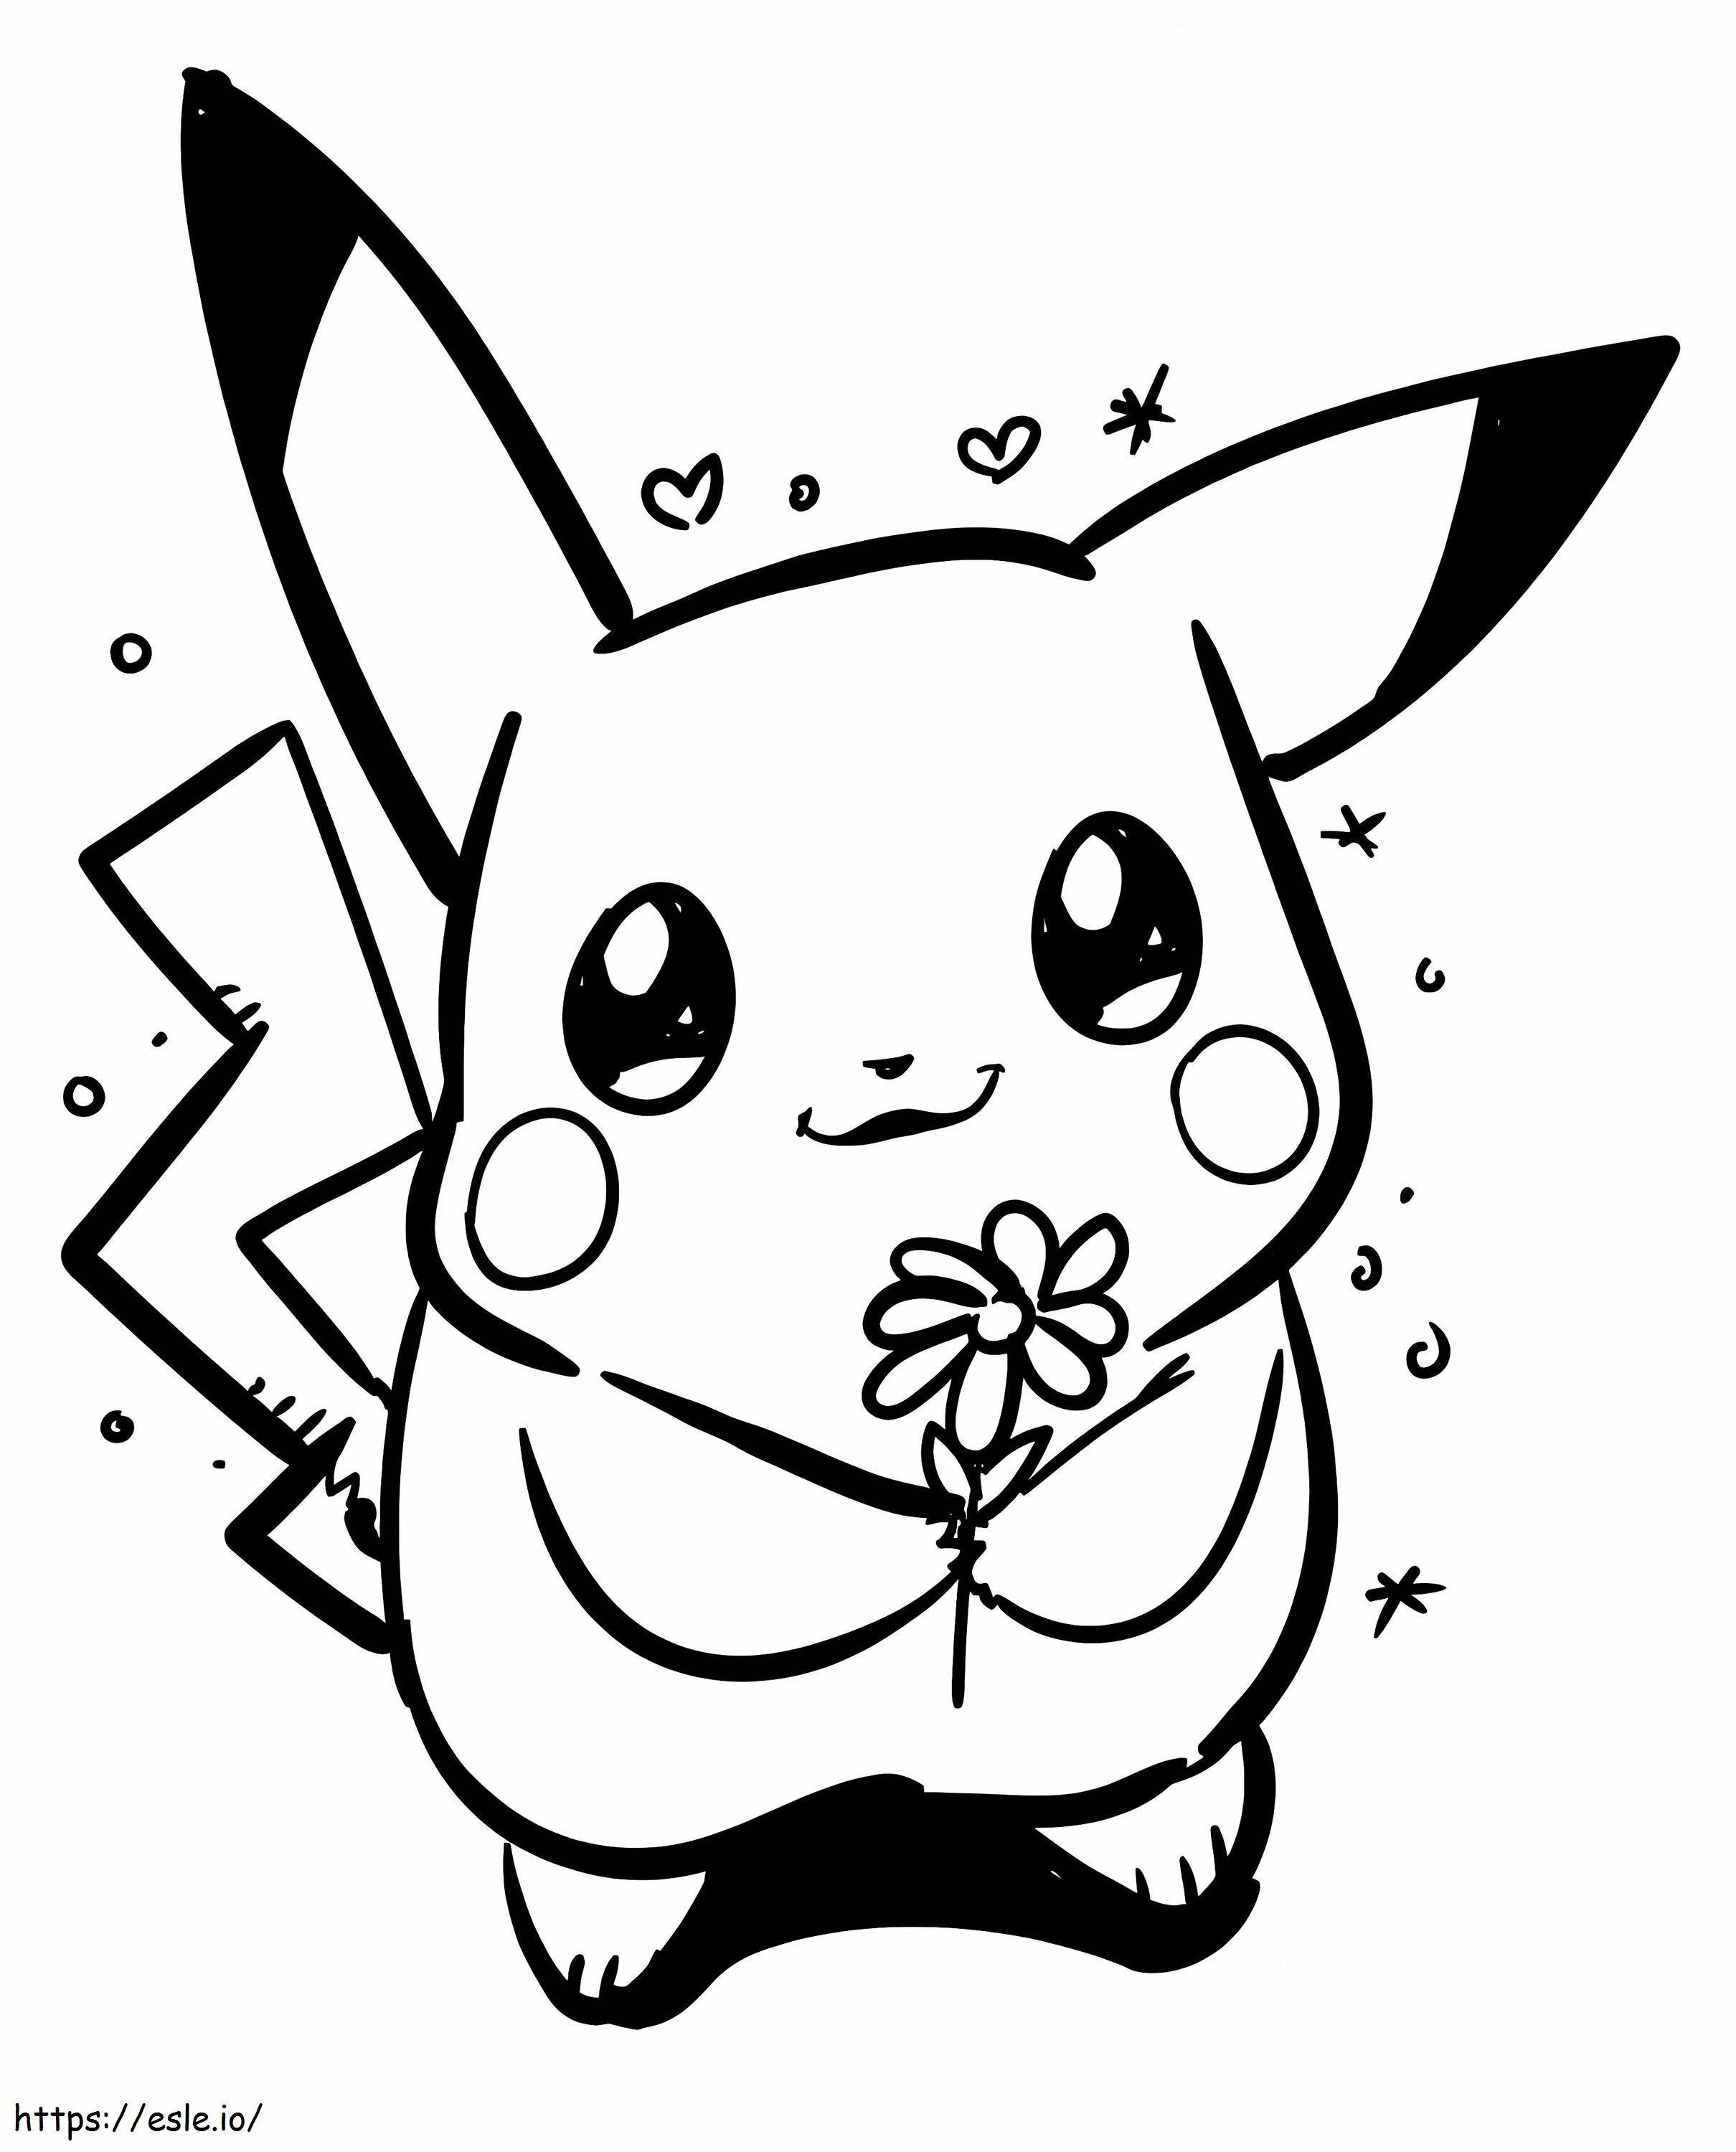 Pikachu com flor para colorir